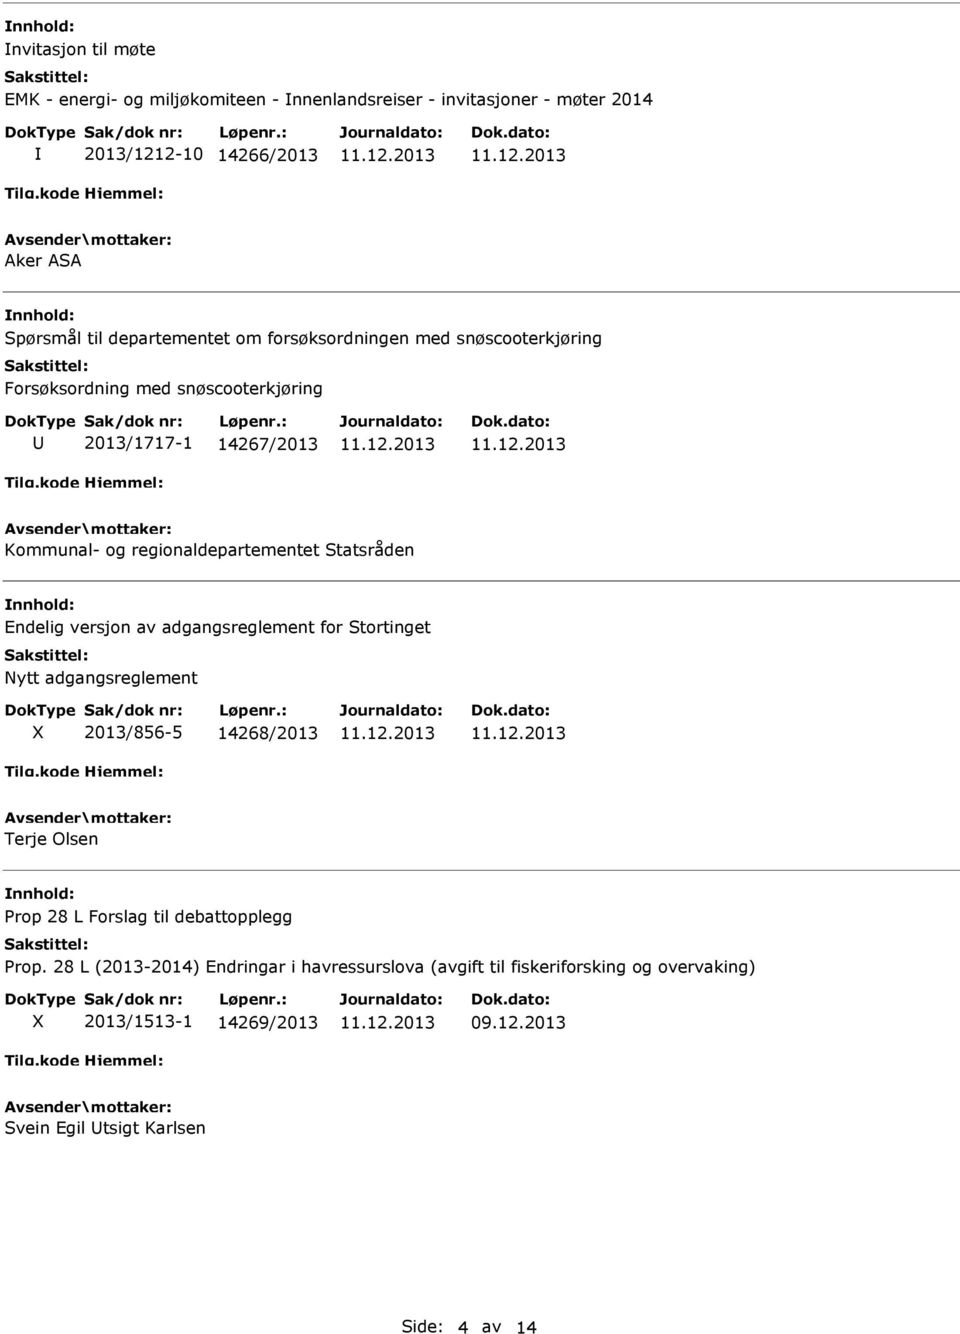 Statsråden Endelig versjon av adgangsreglement for Stortinget Nytt adgangsreglement 2013/856-5 14268/2013 Terje Olsen Prop 28 L Forslag til